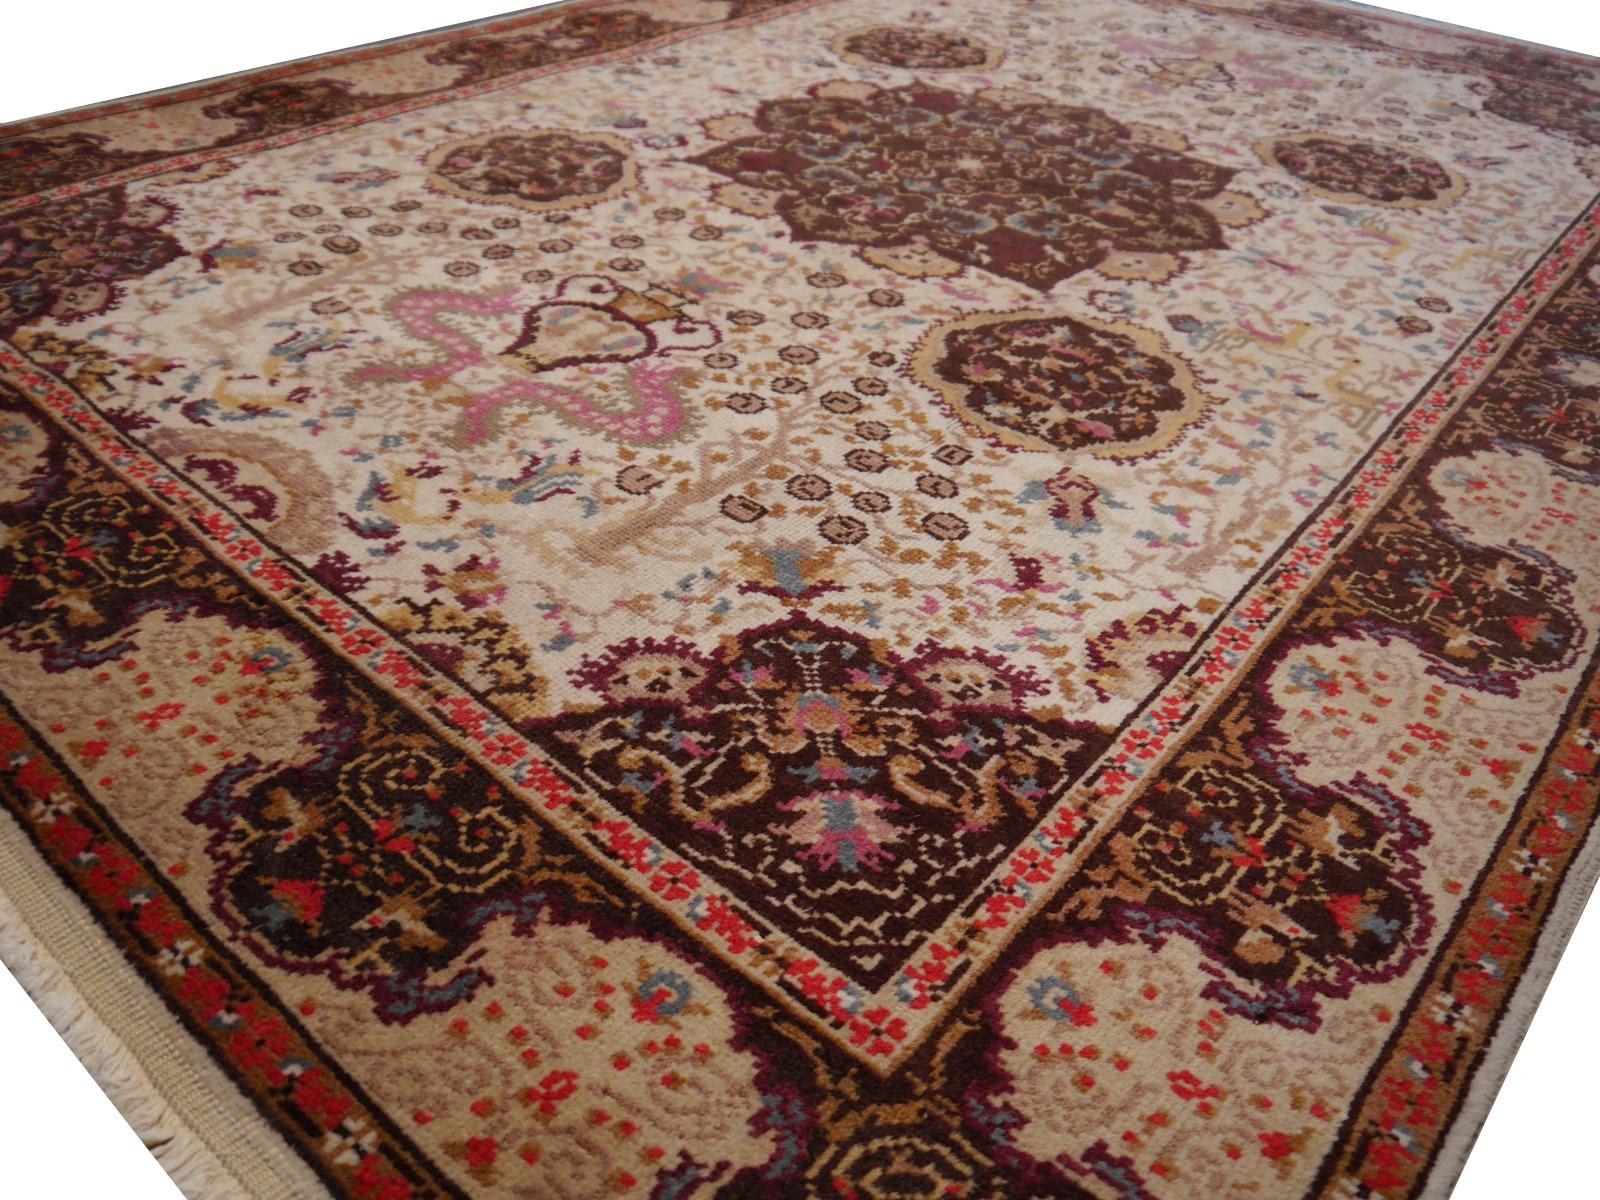 Turkish Vintage Rug Hand Knotted Medaillon Design Beige Brown Area Carpet For Sale 3